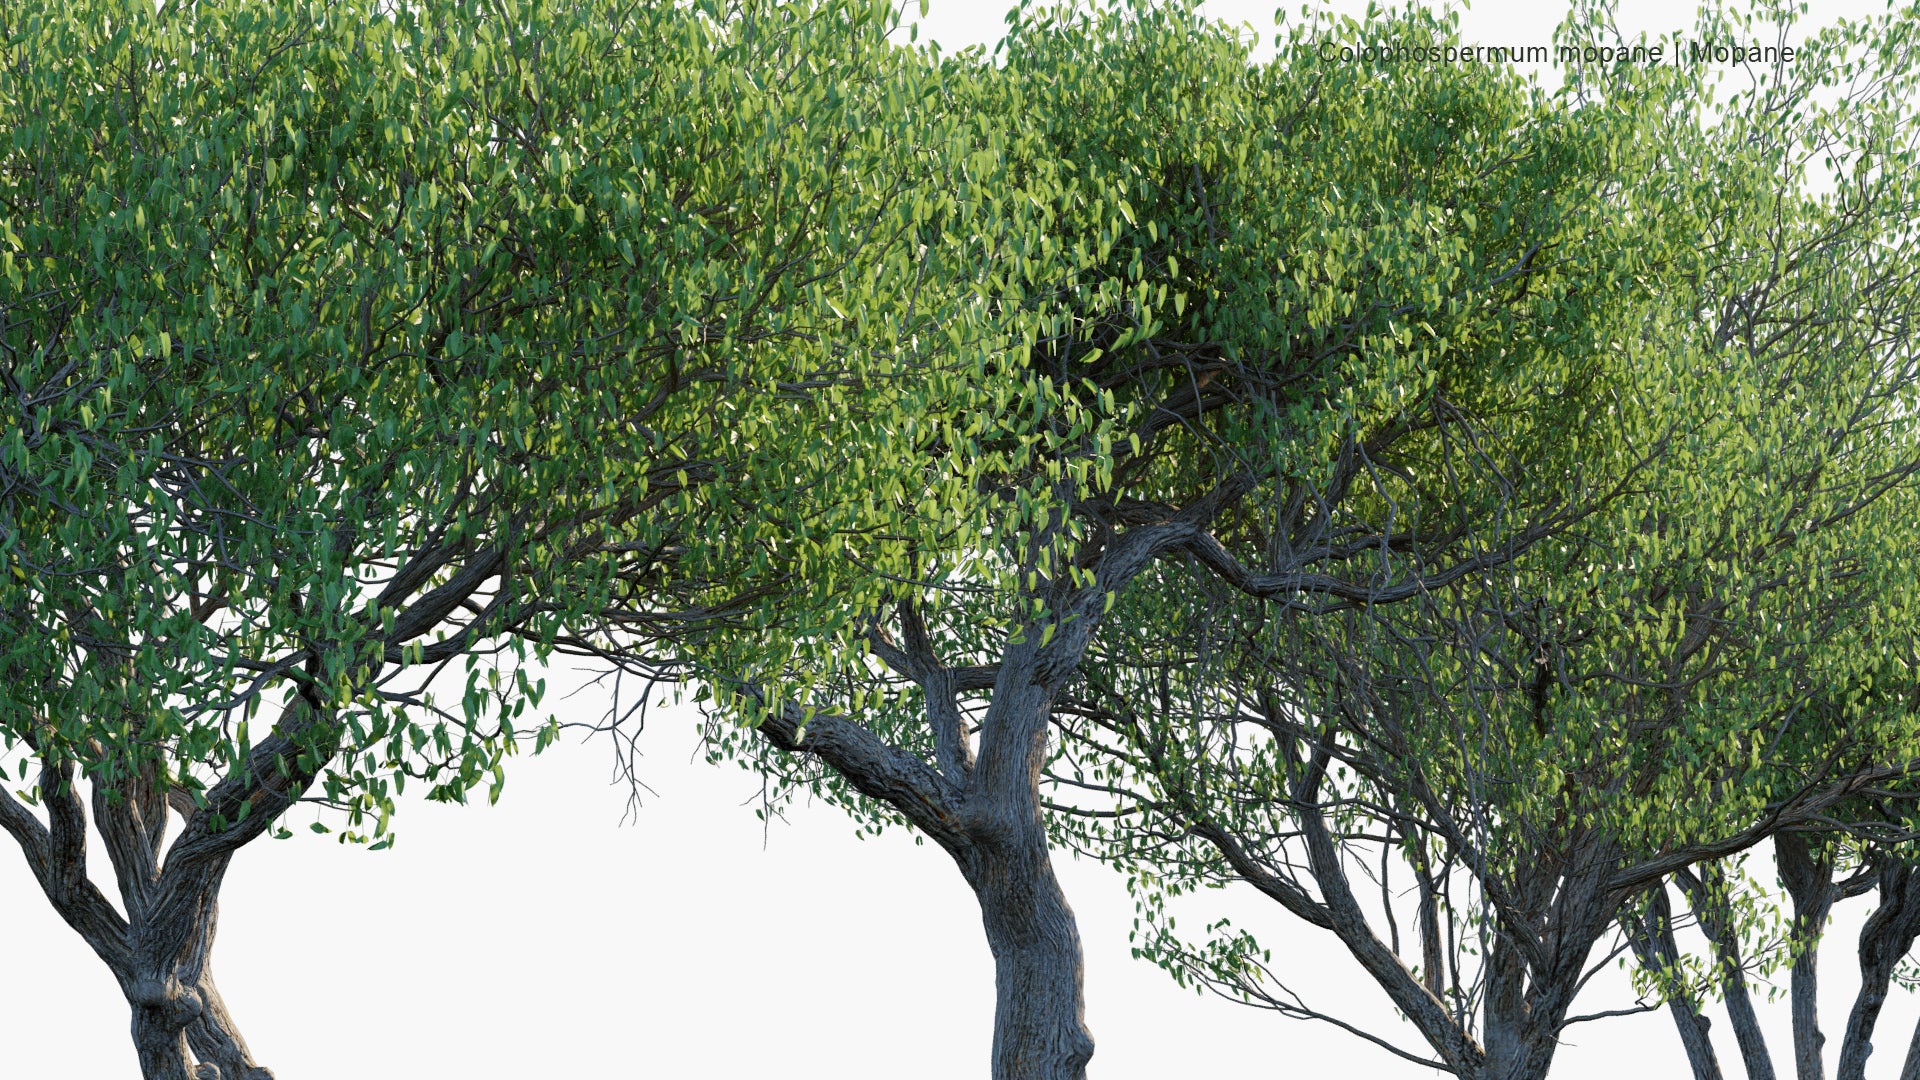 Colophospermum Mopane - Mopane, Balsam Tree, Butterfly Tree, Turpentine Tree (3D Model)